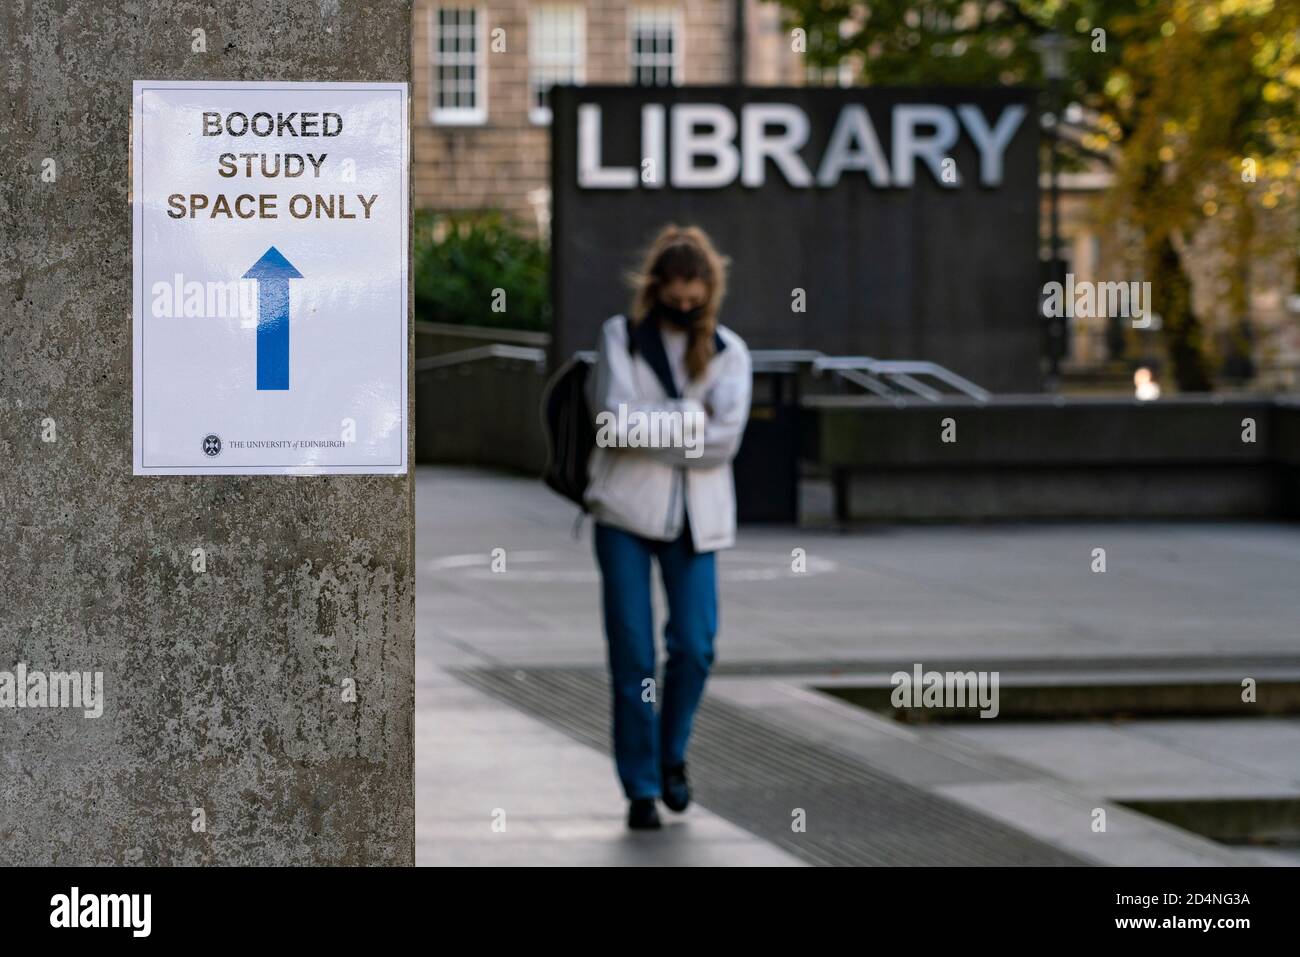 Extérieur de la bibliothèque à l'université d'Édimbourg avec signe de distanciation sociale Covid-19, Écosse Royaume-Uni Banque D'Images